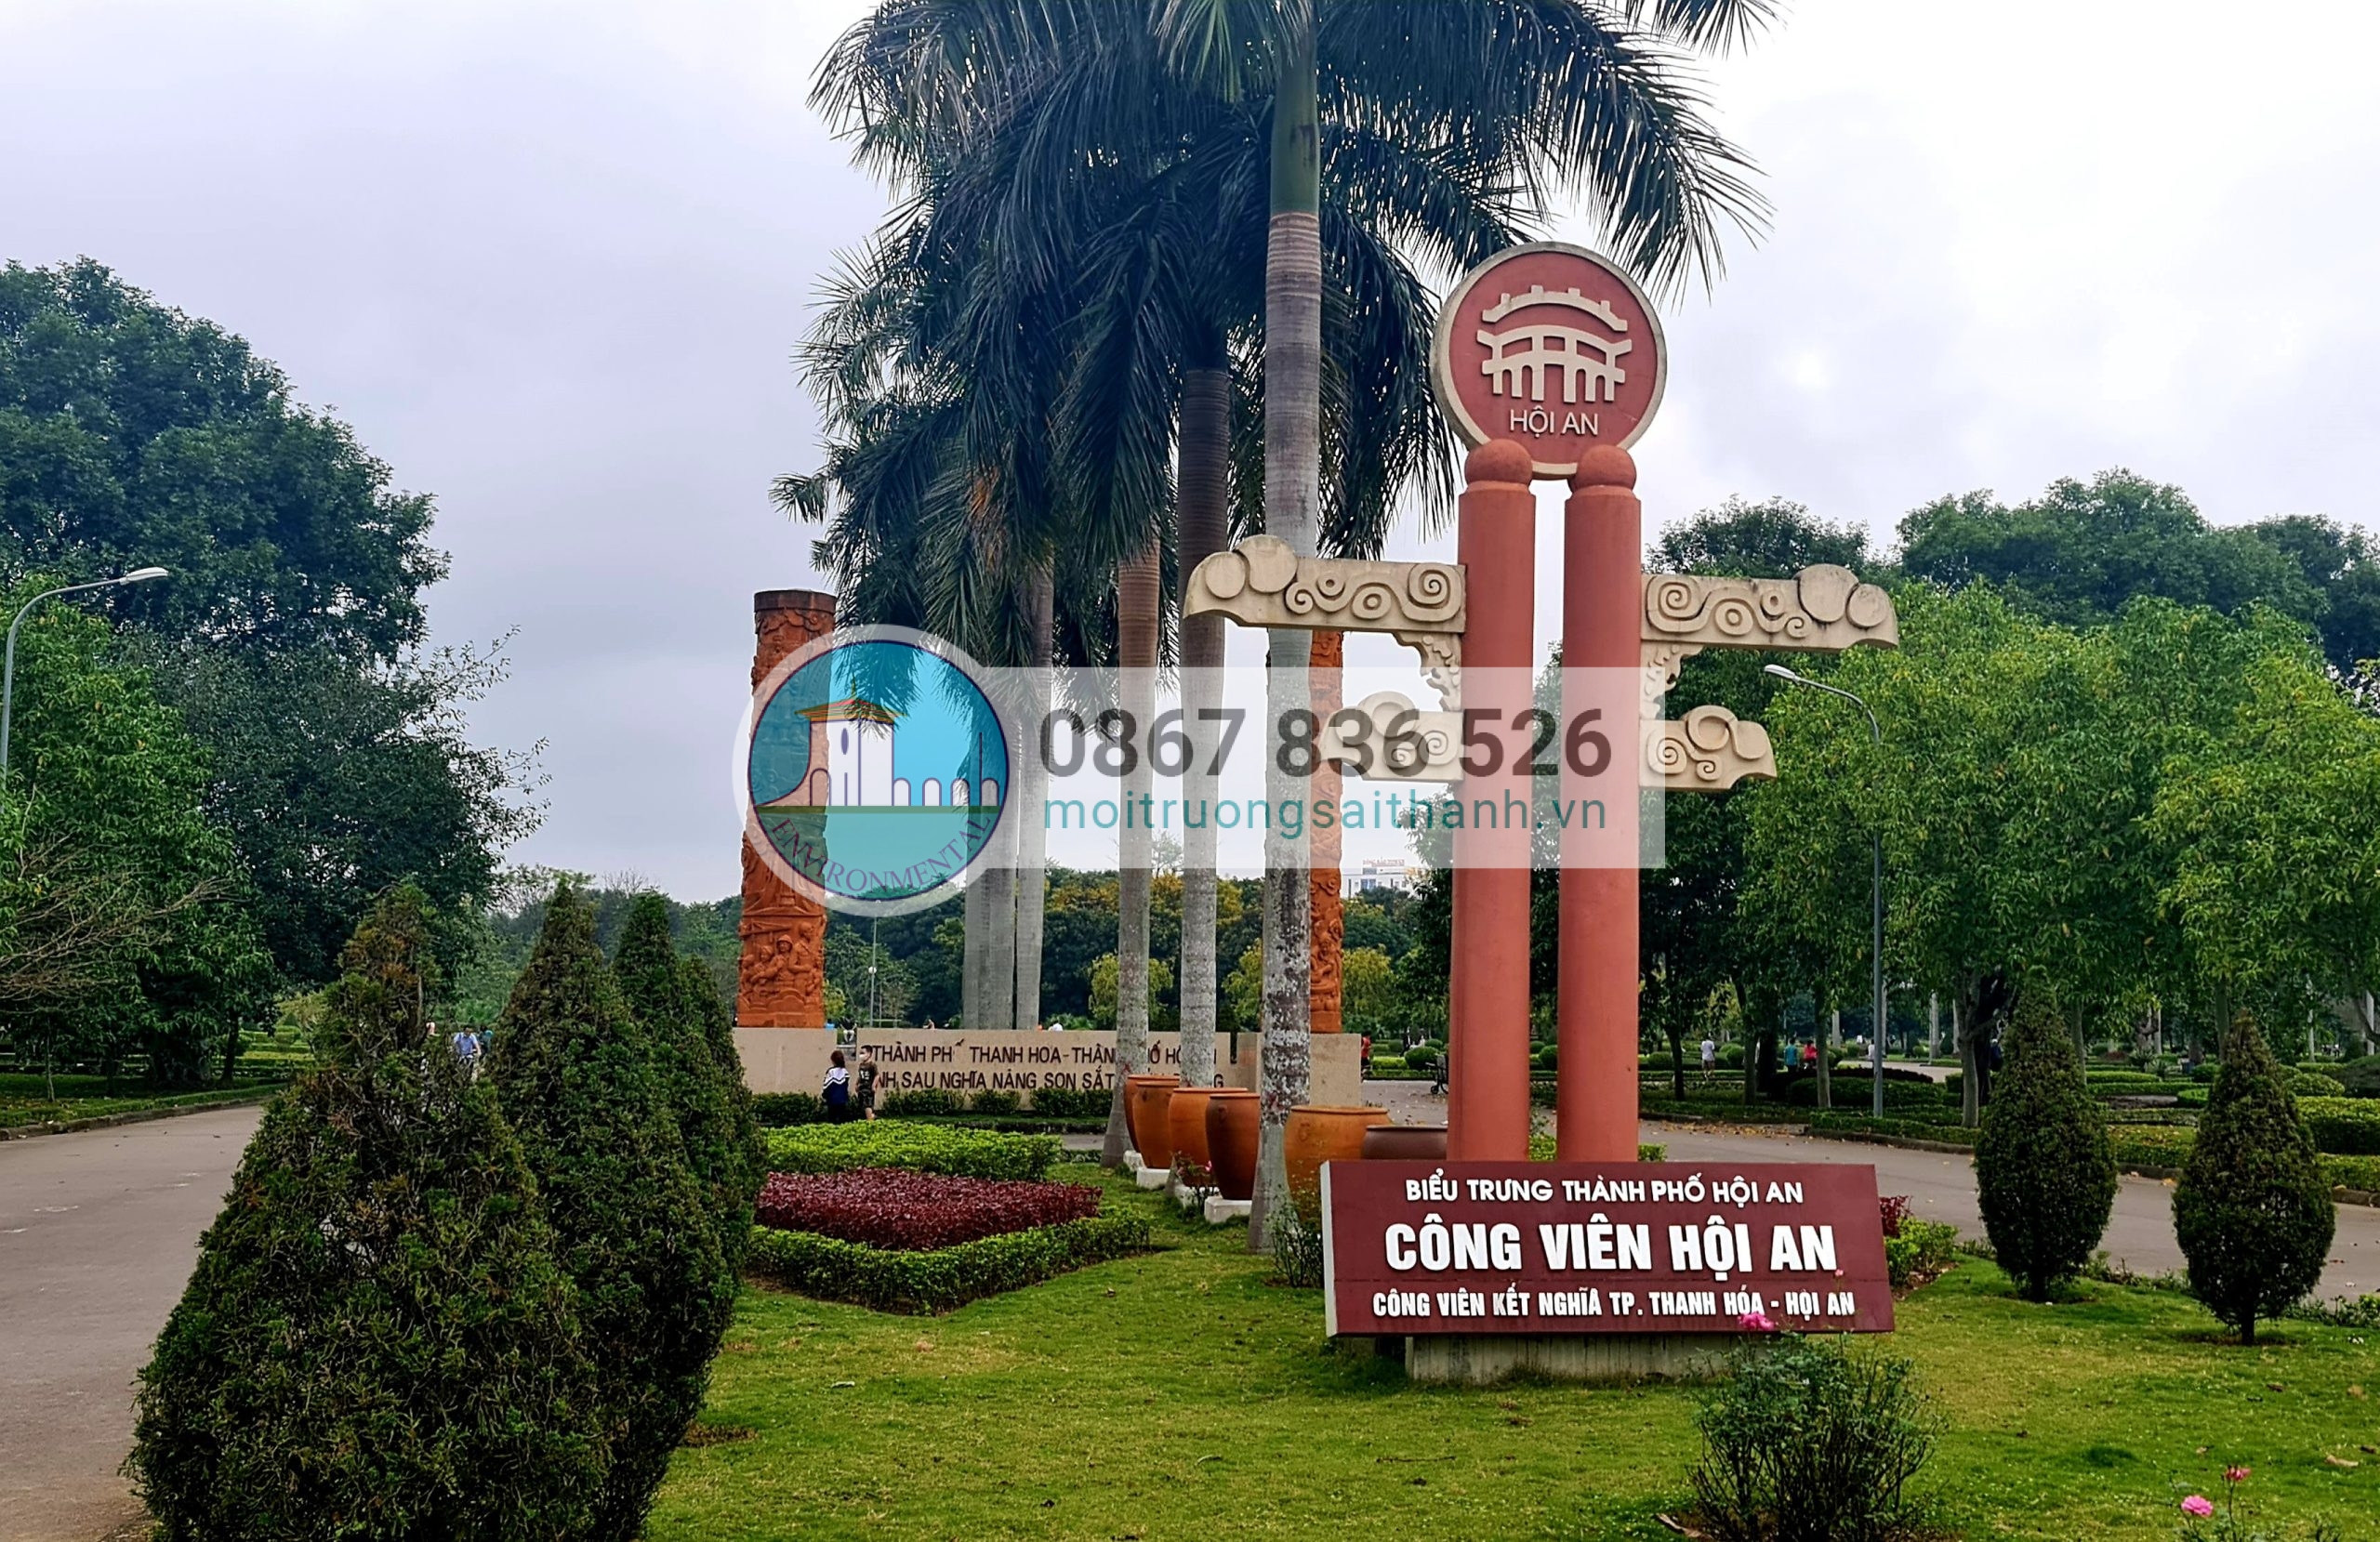 Rác thải công viên Hội An - Thành phố Thanh Hóa